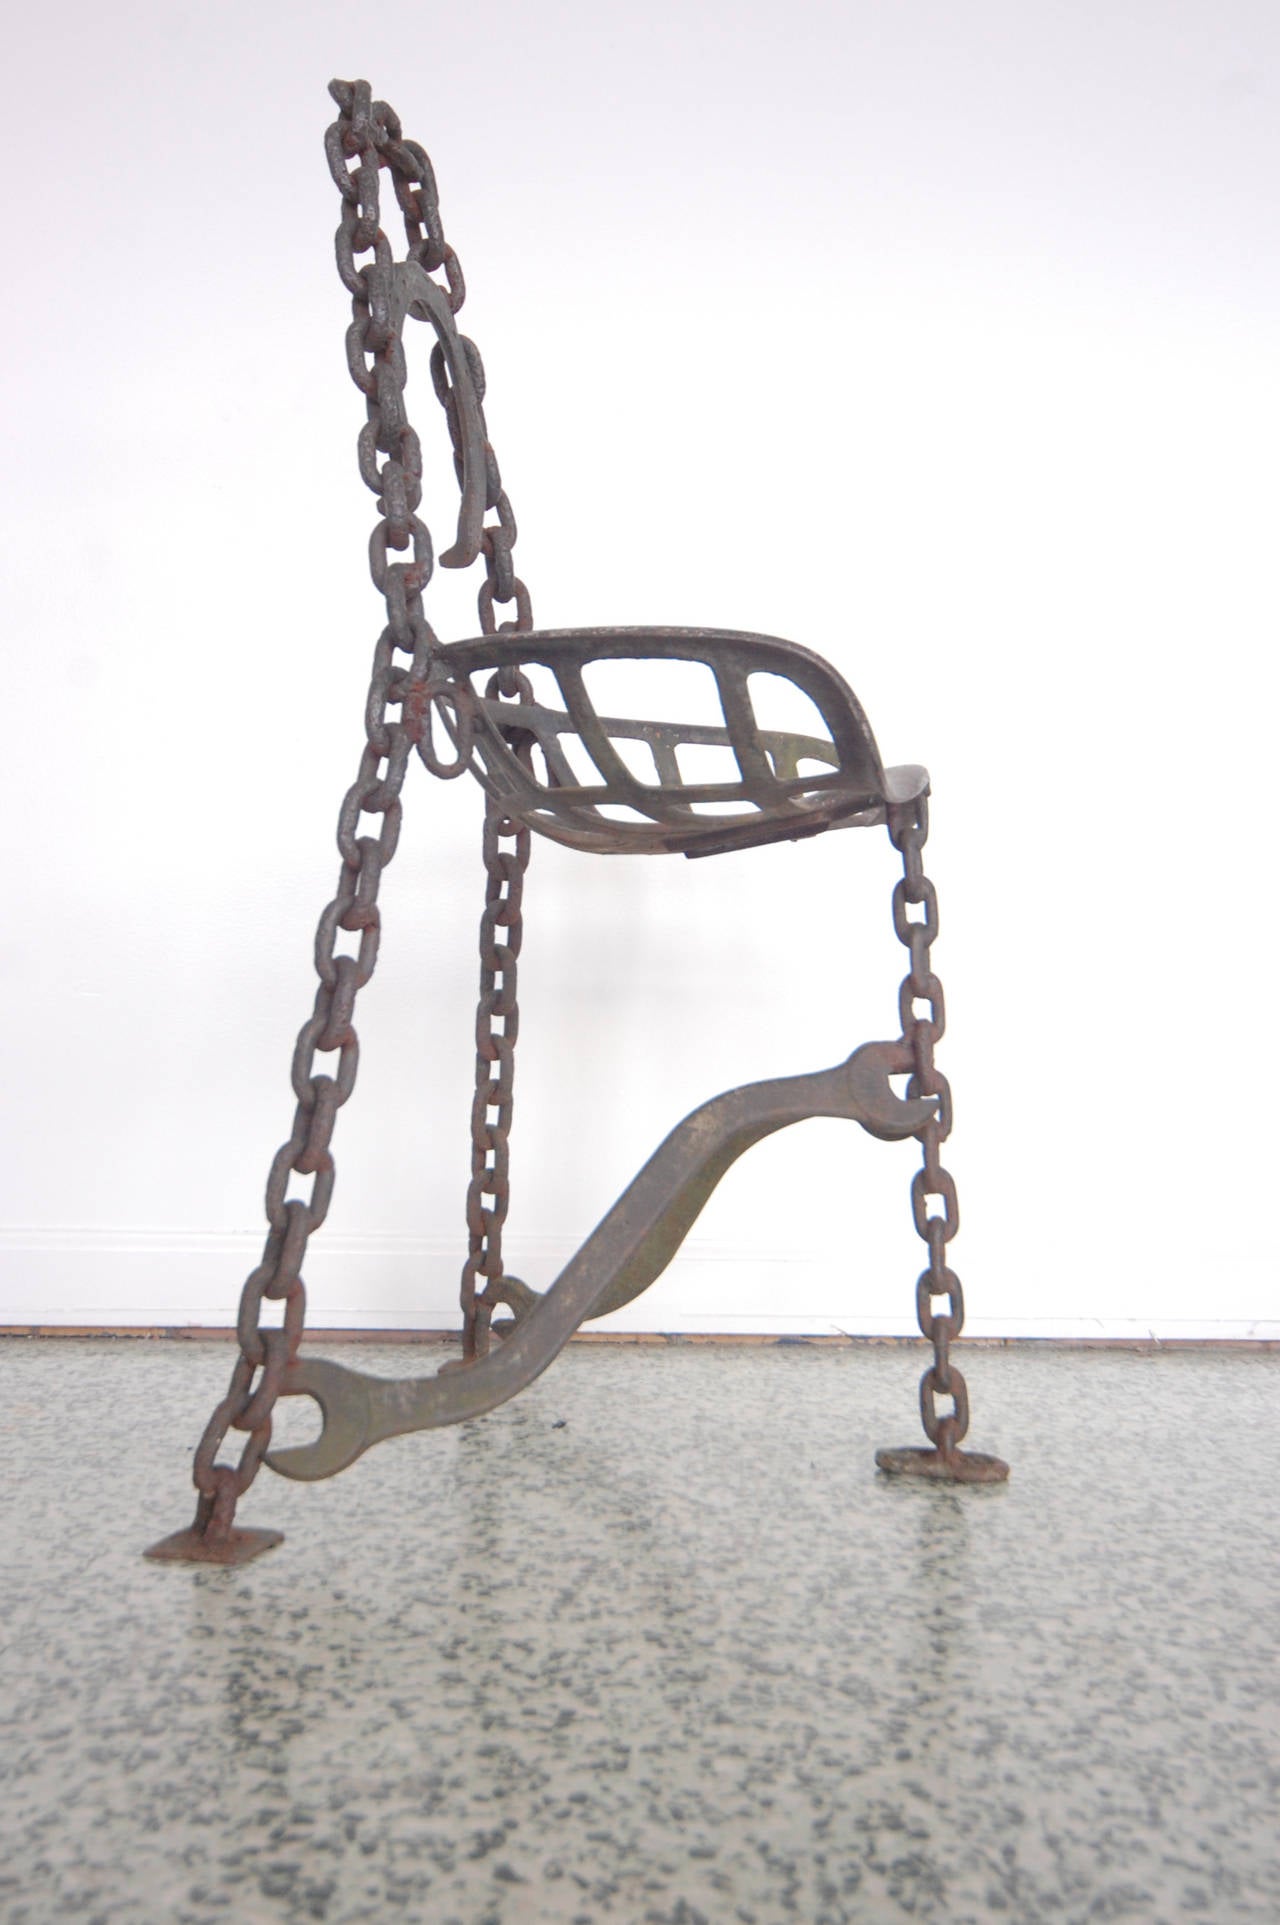 Sculptural Horseshoe Wrench Metal Folk Art Chair 2